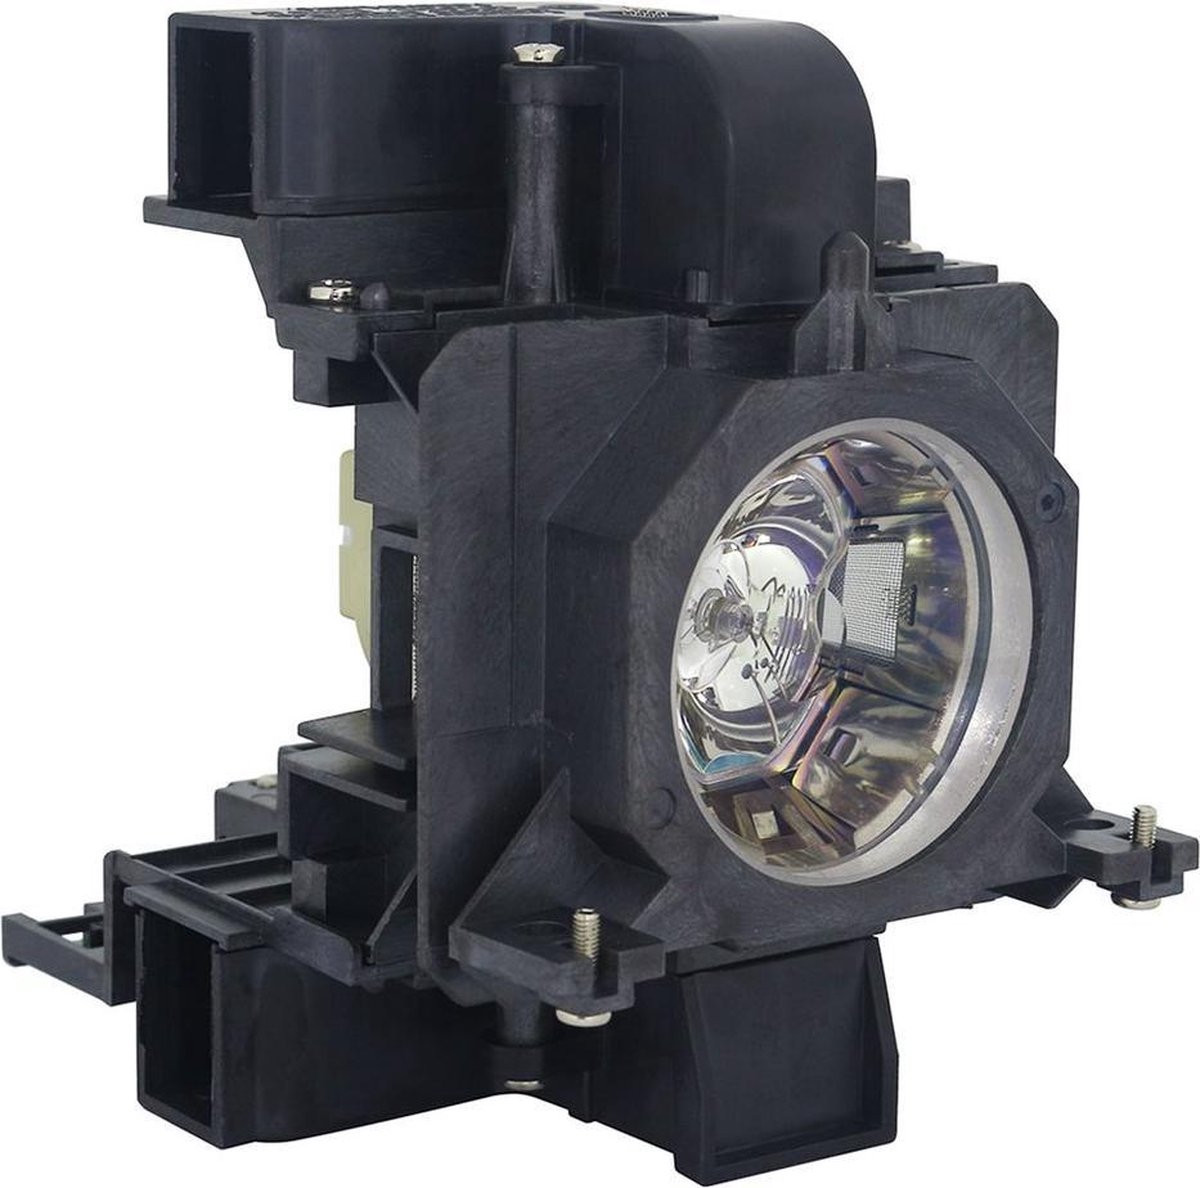 Beamerlamp geschikt voor de PANASONIC PT-EX500EL beamer, lamp code ET-LAE200. Bevat originele UHP lamp, prestaties gelijk aan origineel.